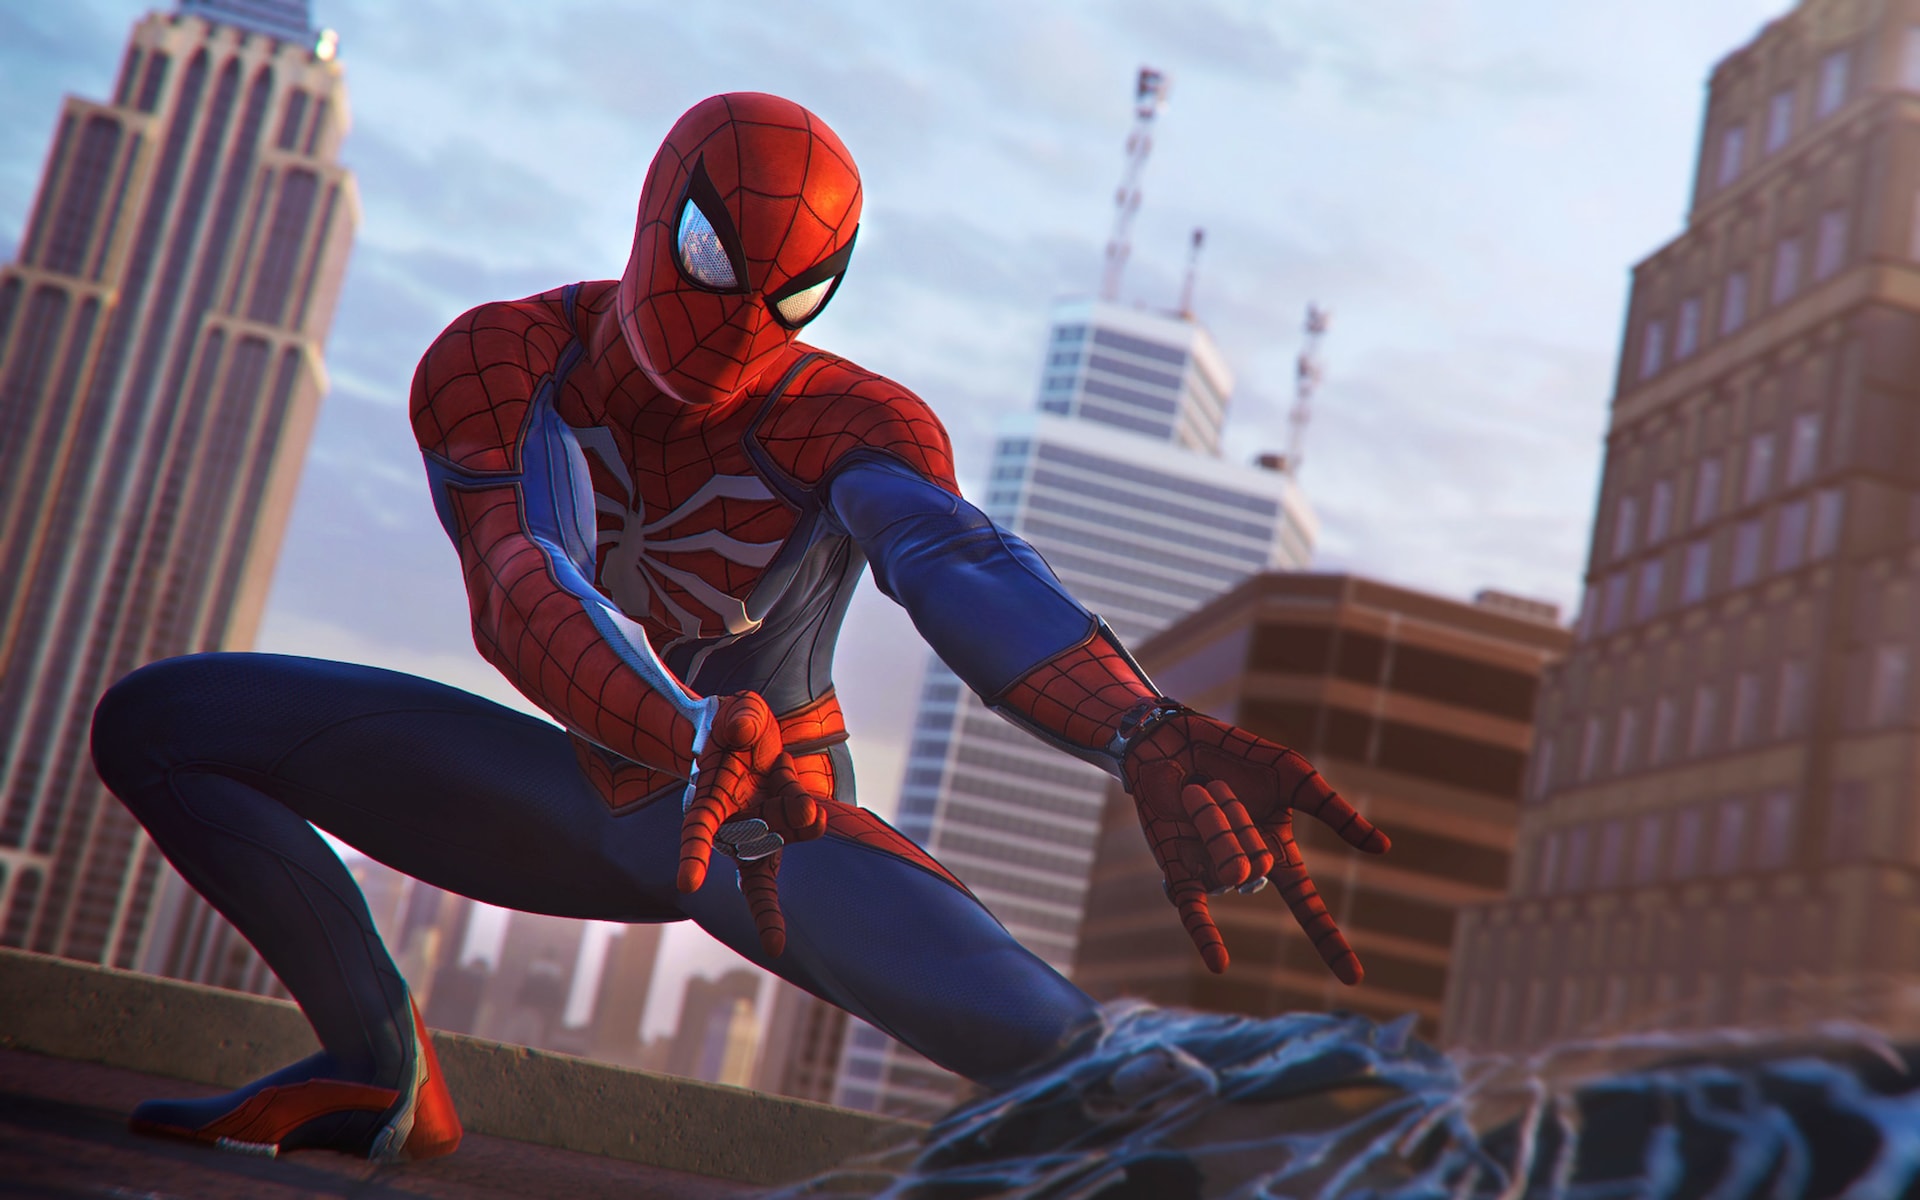 Insomniac Games confirma que en Spider-Man no aparecerá ningún otro héroe de Marvel